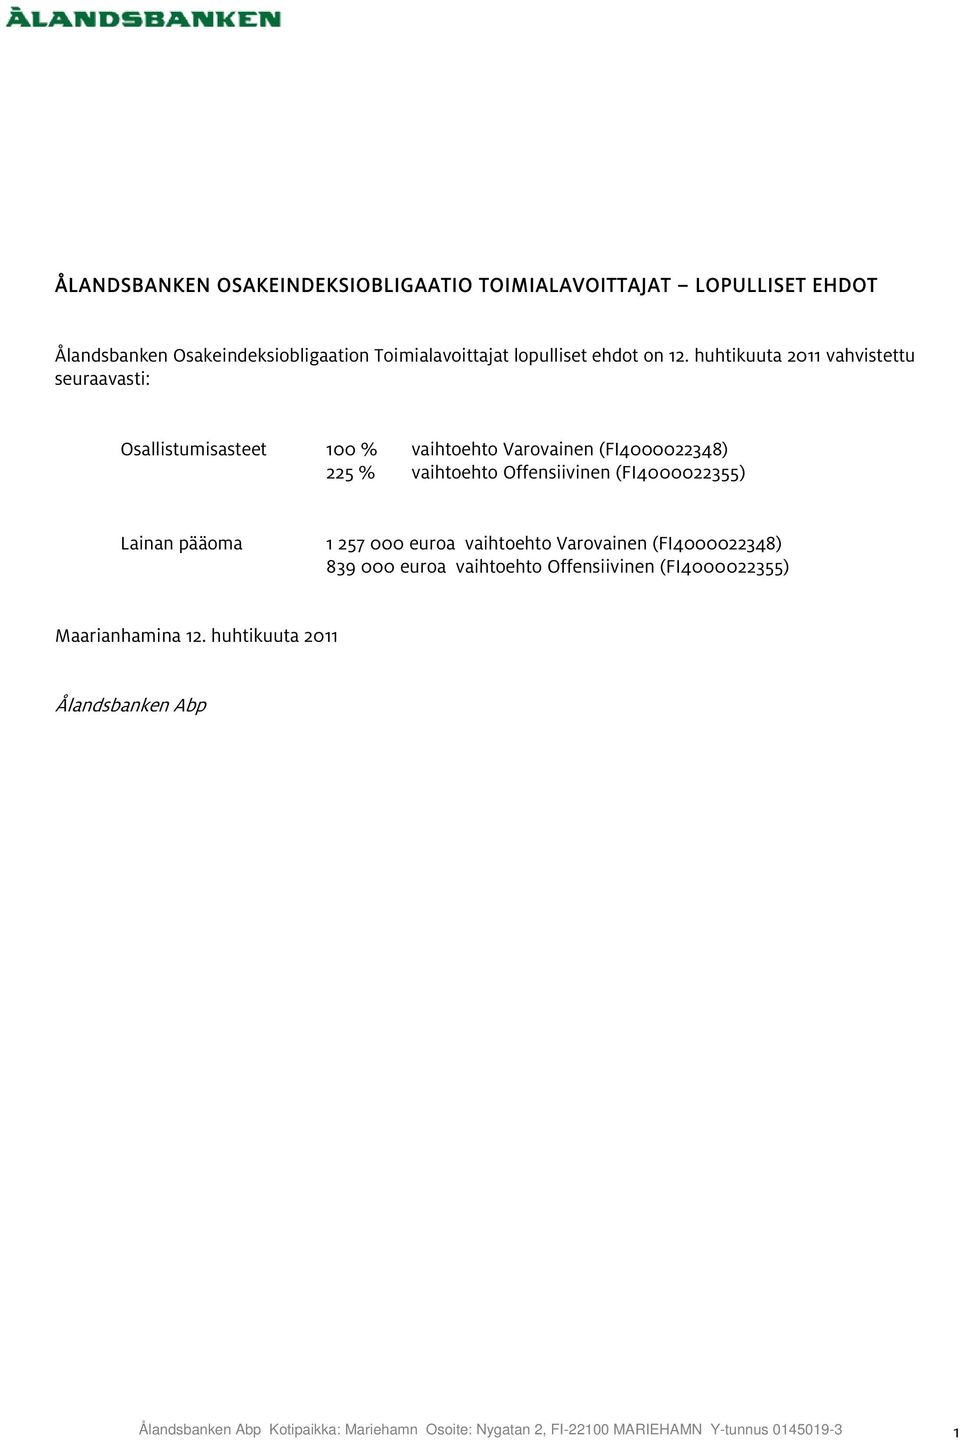 huhtikuuta 2011 vahvistettu seuraavasti: - Osallistumisasteet 100 % vaihtoehto Varovainen (FI4000022348) 225 % vaihtoehto